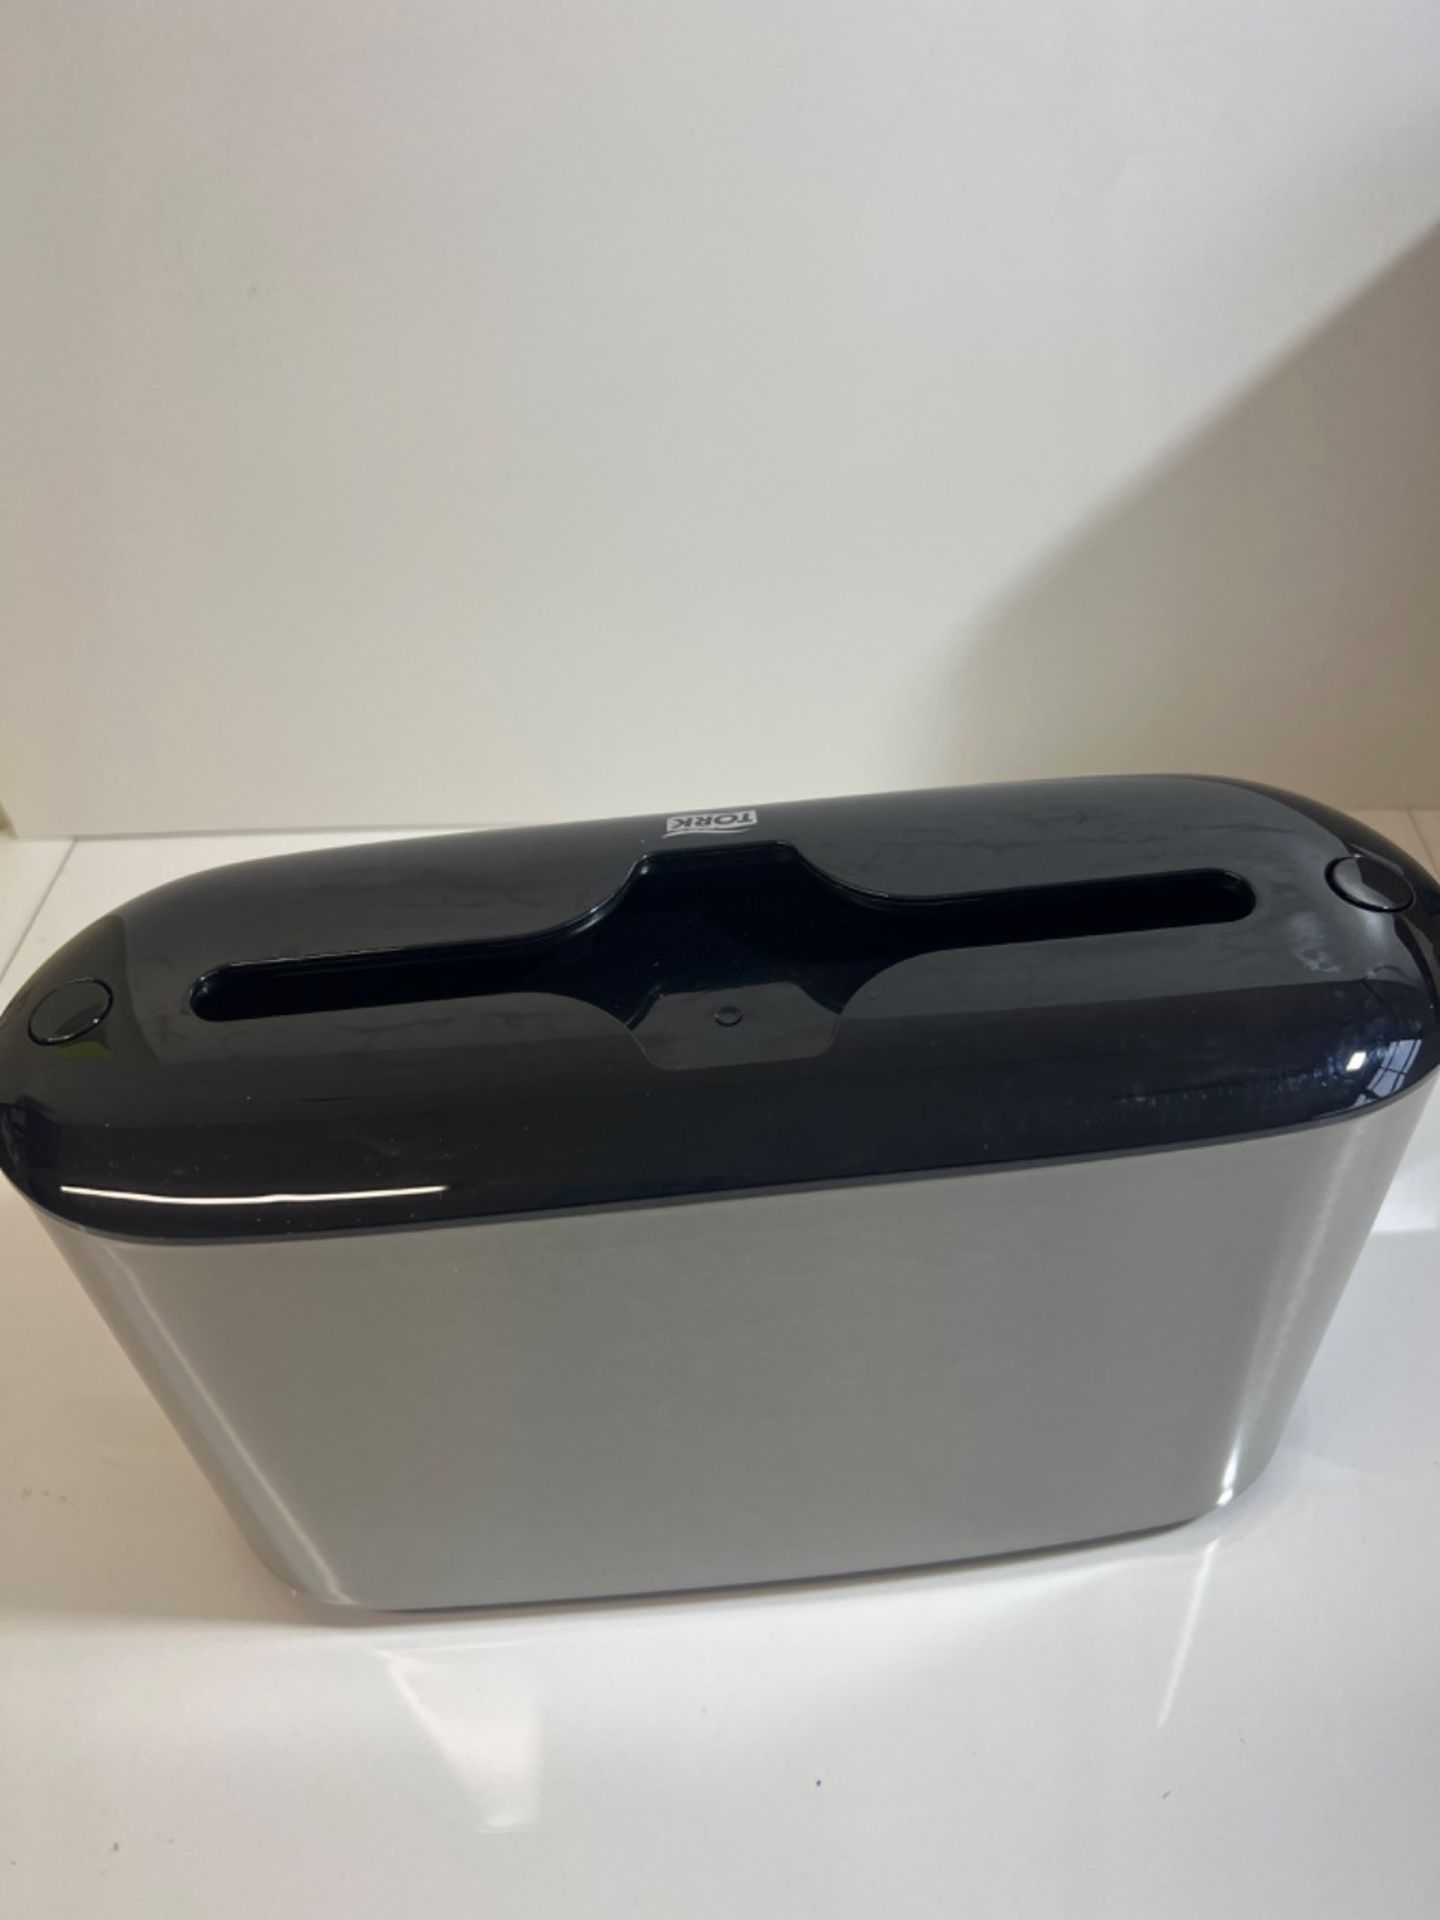 Tork Xpress Countertop Multifold Hand Towel Dispenser 460005, Image Design - H2 Paper Towel Dispens - Image 3 of 3